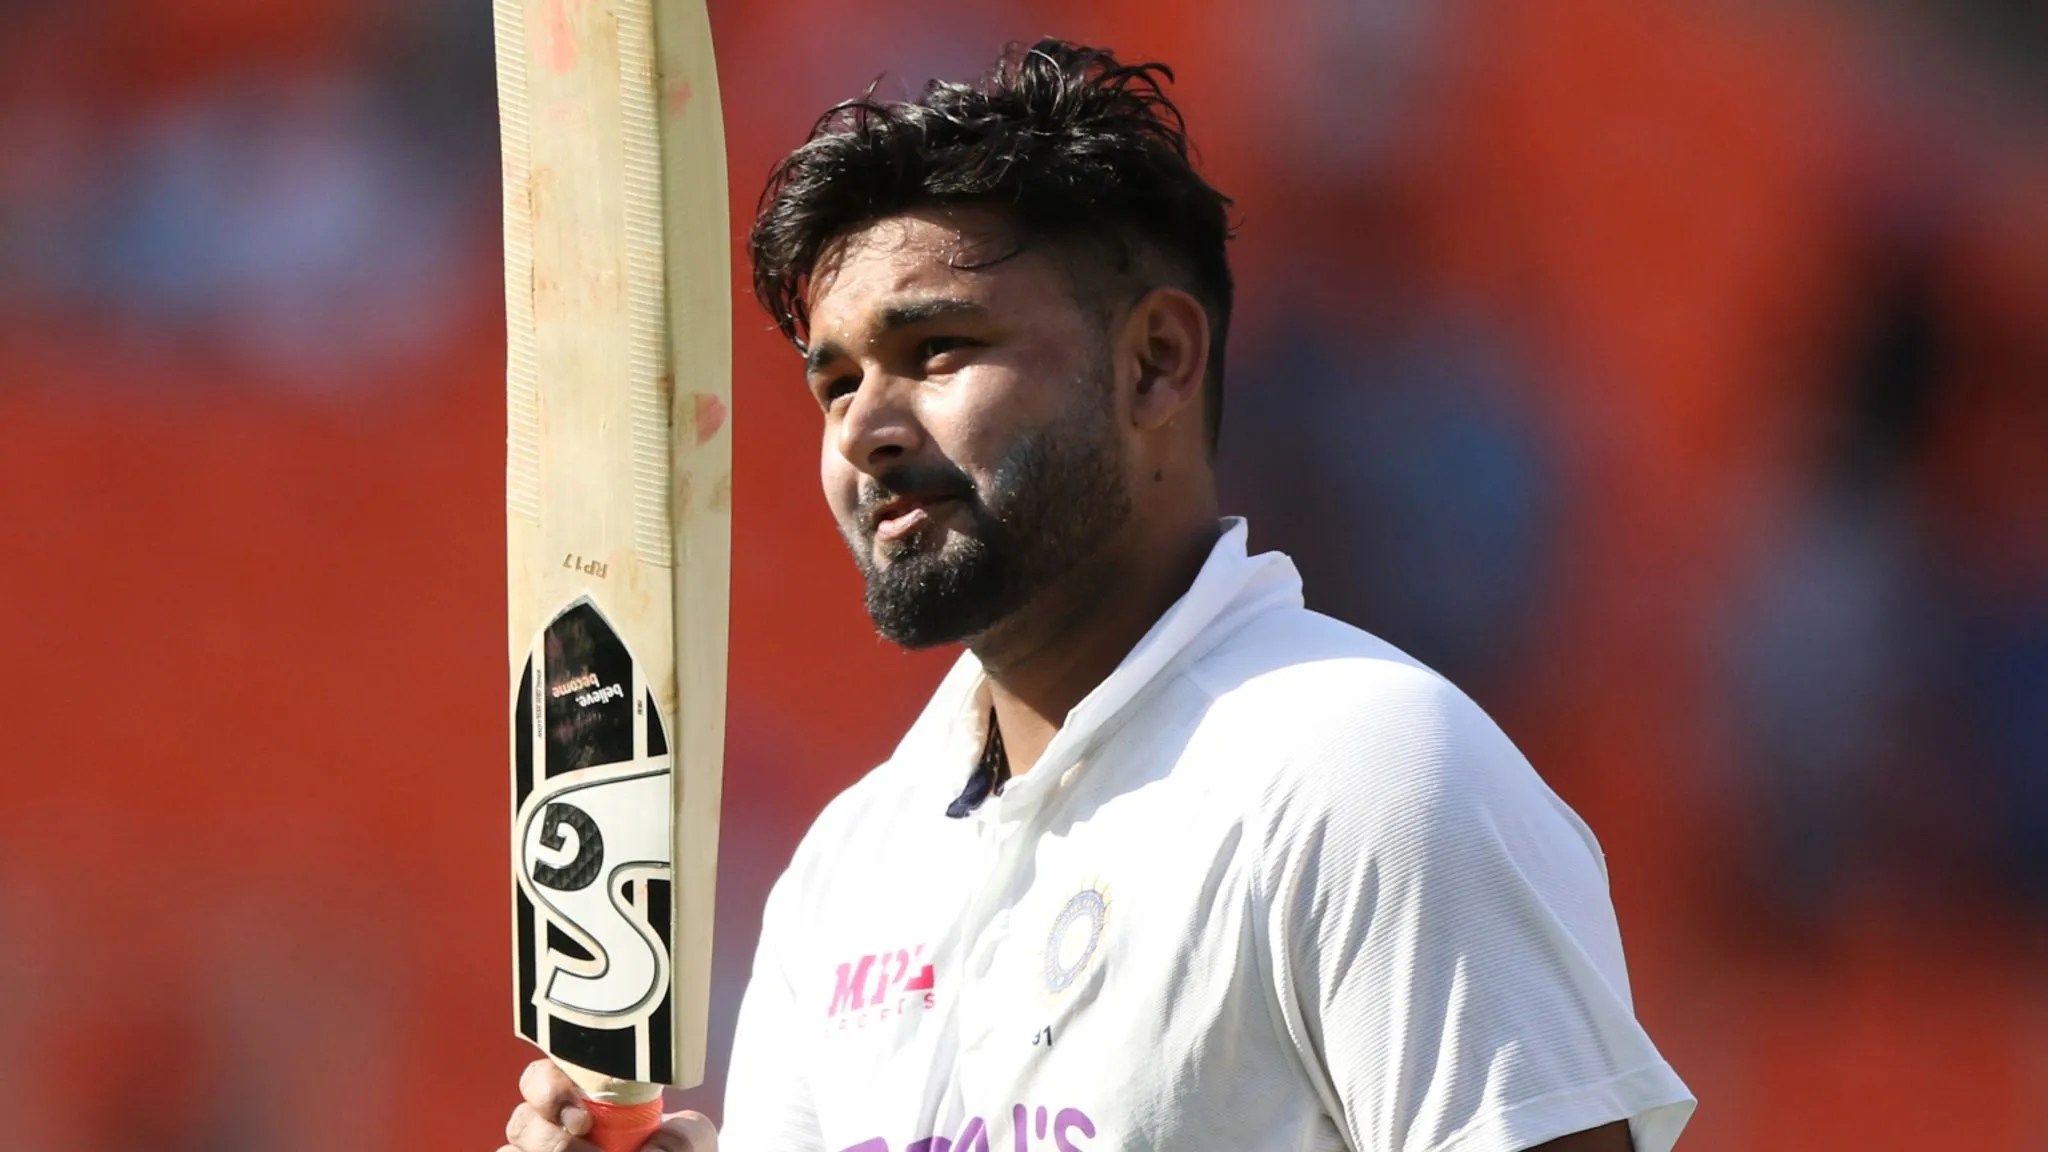  IND vs AUS Test: ऑस्ट्रेलिया के खिलाफ टेस्ट सीरीज में कौन होगा पंत का दावेदार? केएल राहुल, भरत-ईशान में से किसे मिलेगा मौका: Follow Live Updates